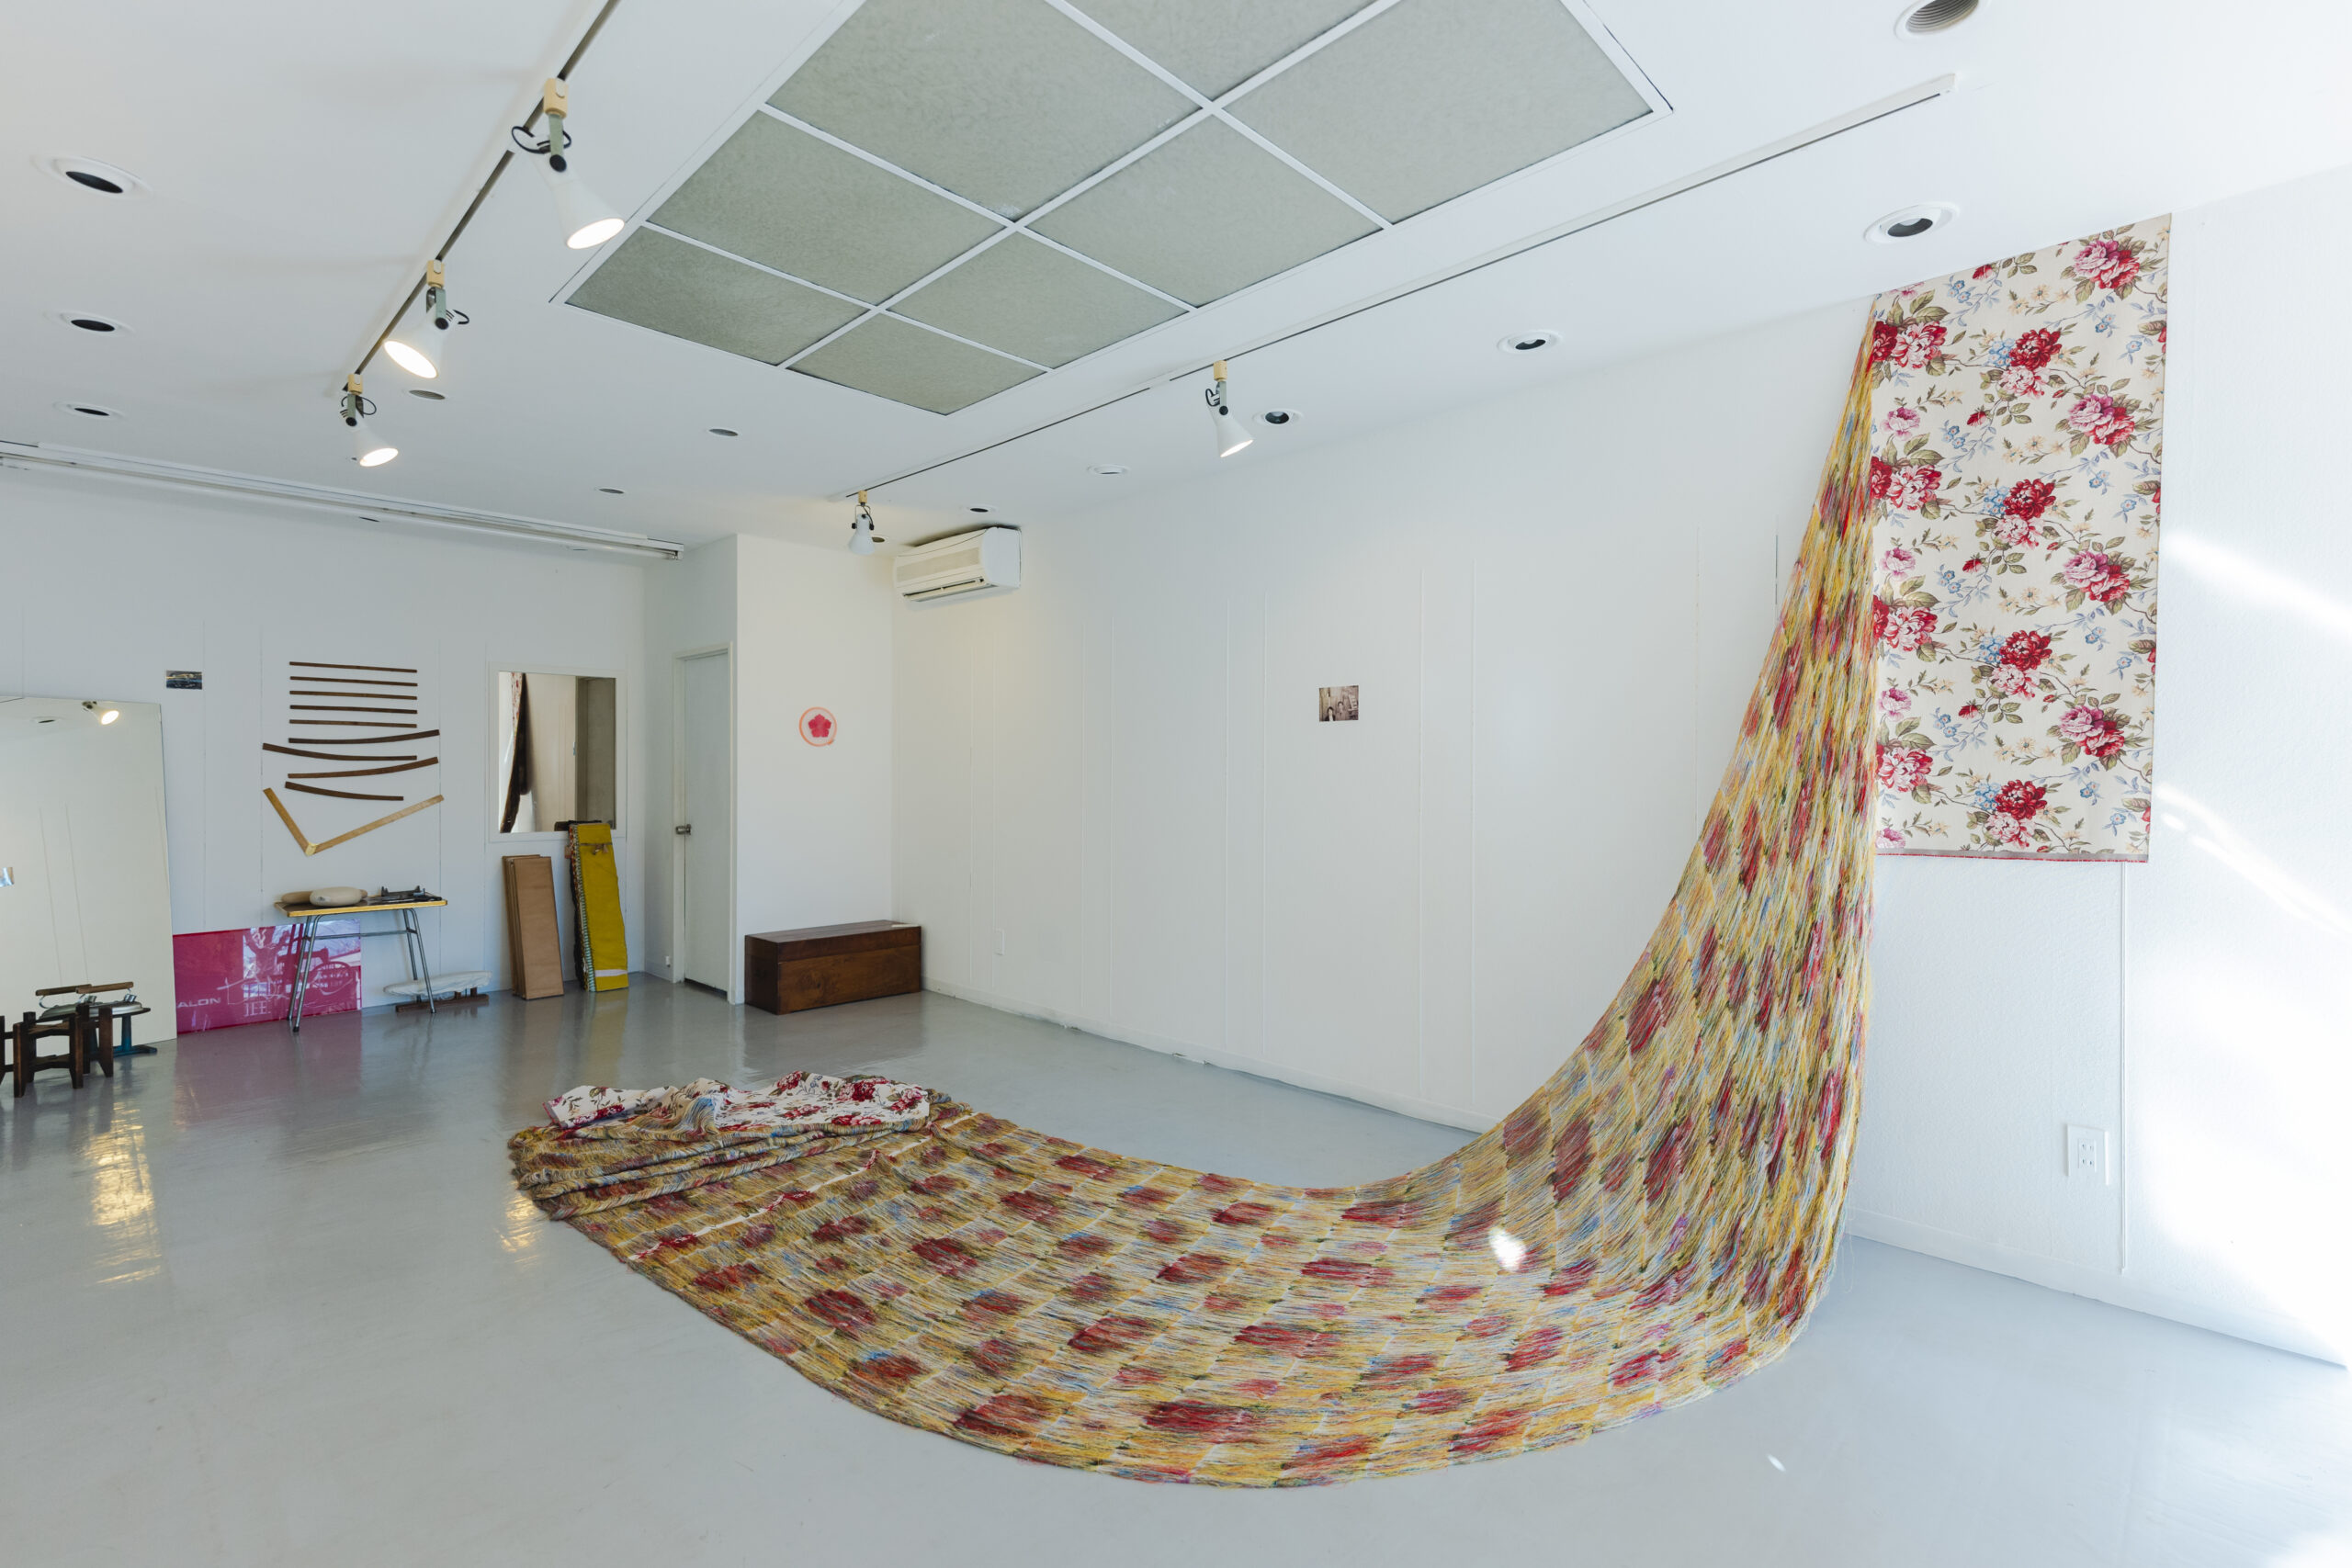 【参考図版】Loosening Fabric #6 (Entangled) 解かれた織物 2017年 H.330 x W.210 x D.219 cm 撮影：Stephen White 展示風景： Turner Contemporary（マーゲート、イギリス）2017年